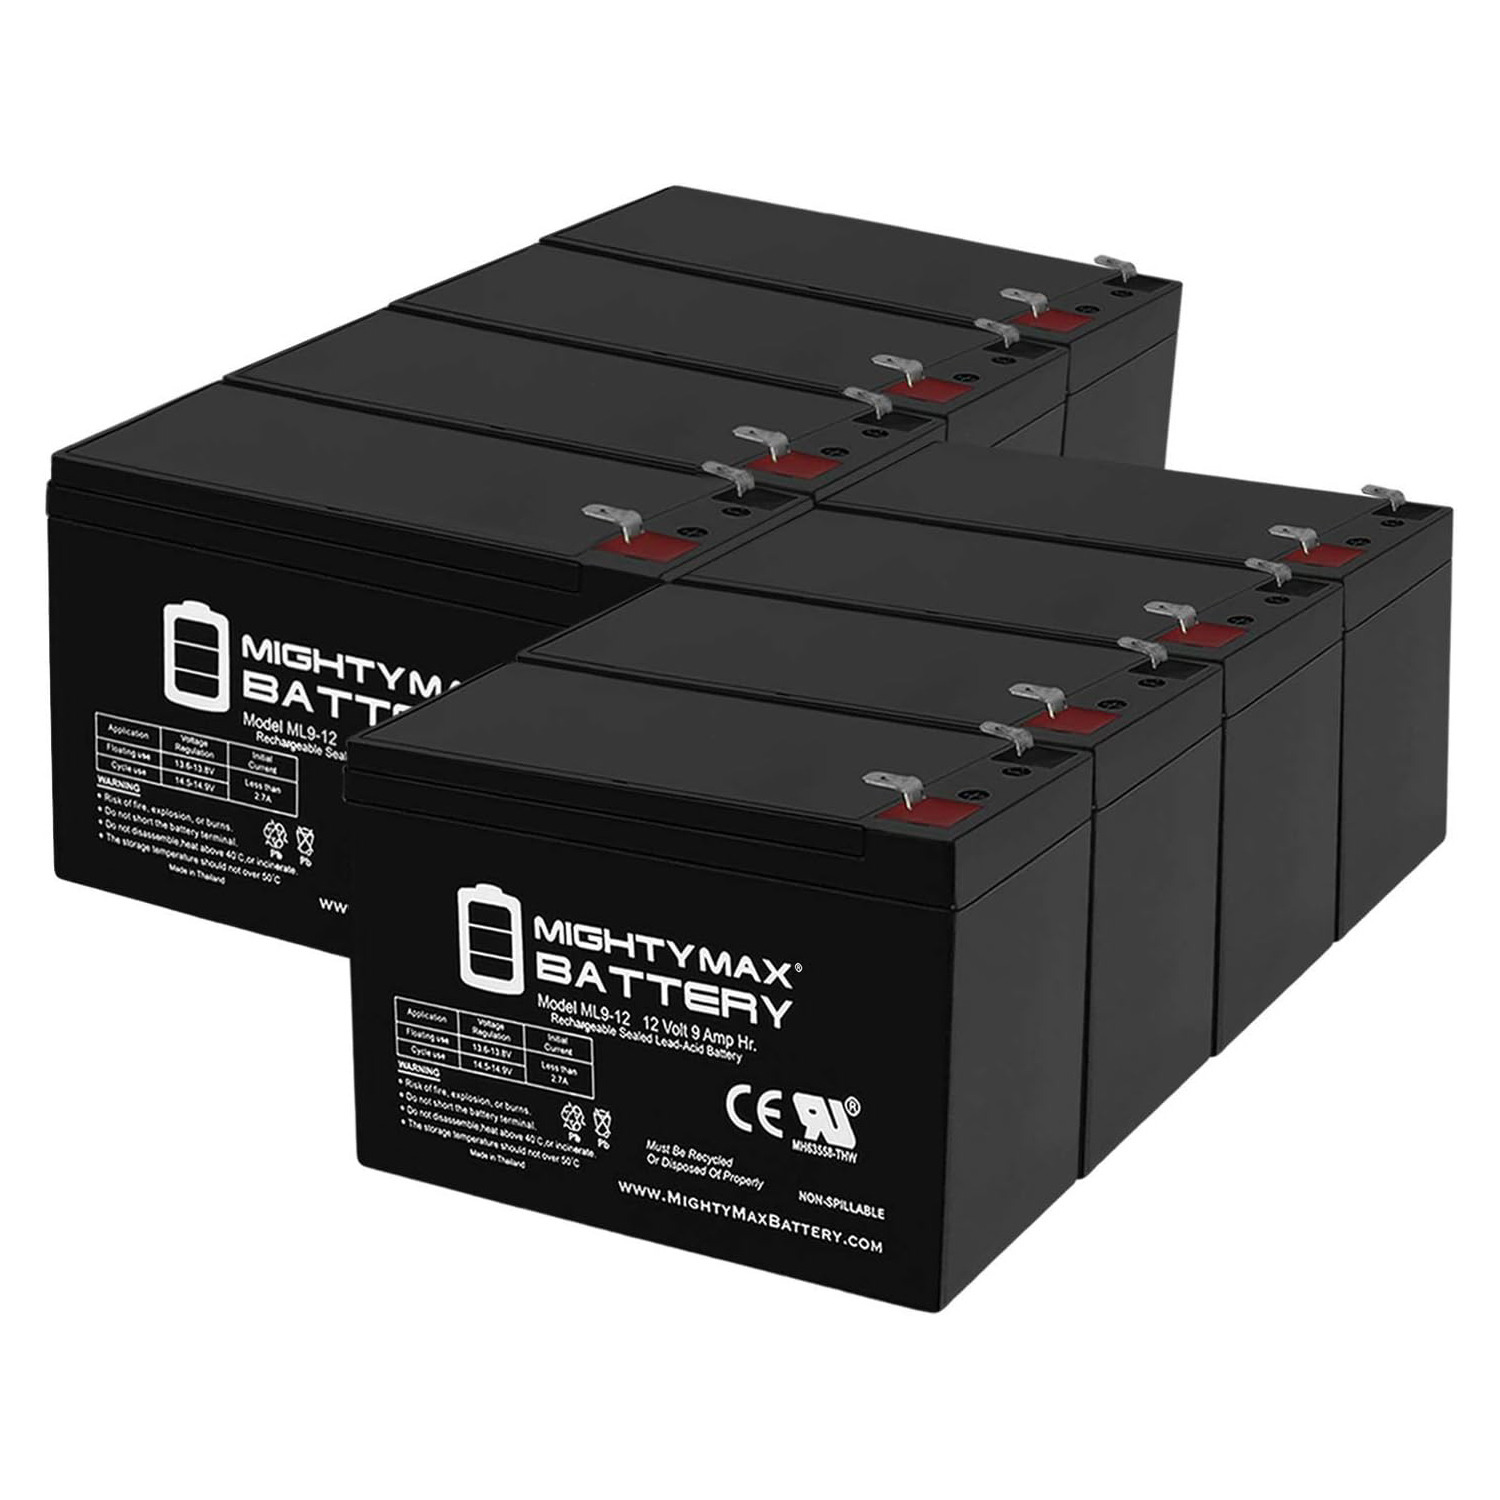 Altronix AL300ULX 12V, 9Ah Lead Acid Battery - 8 Pack